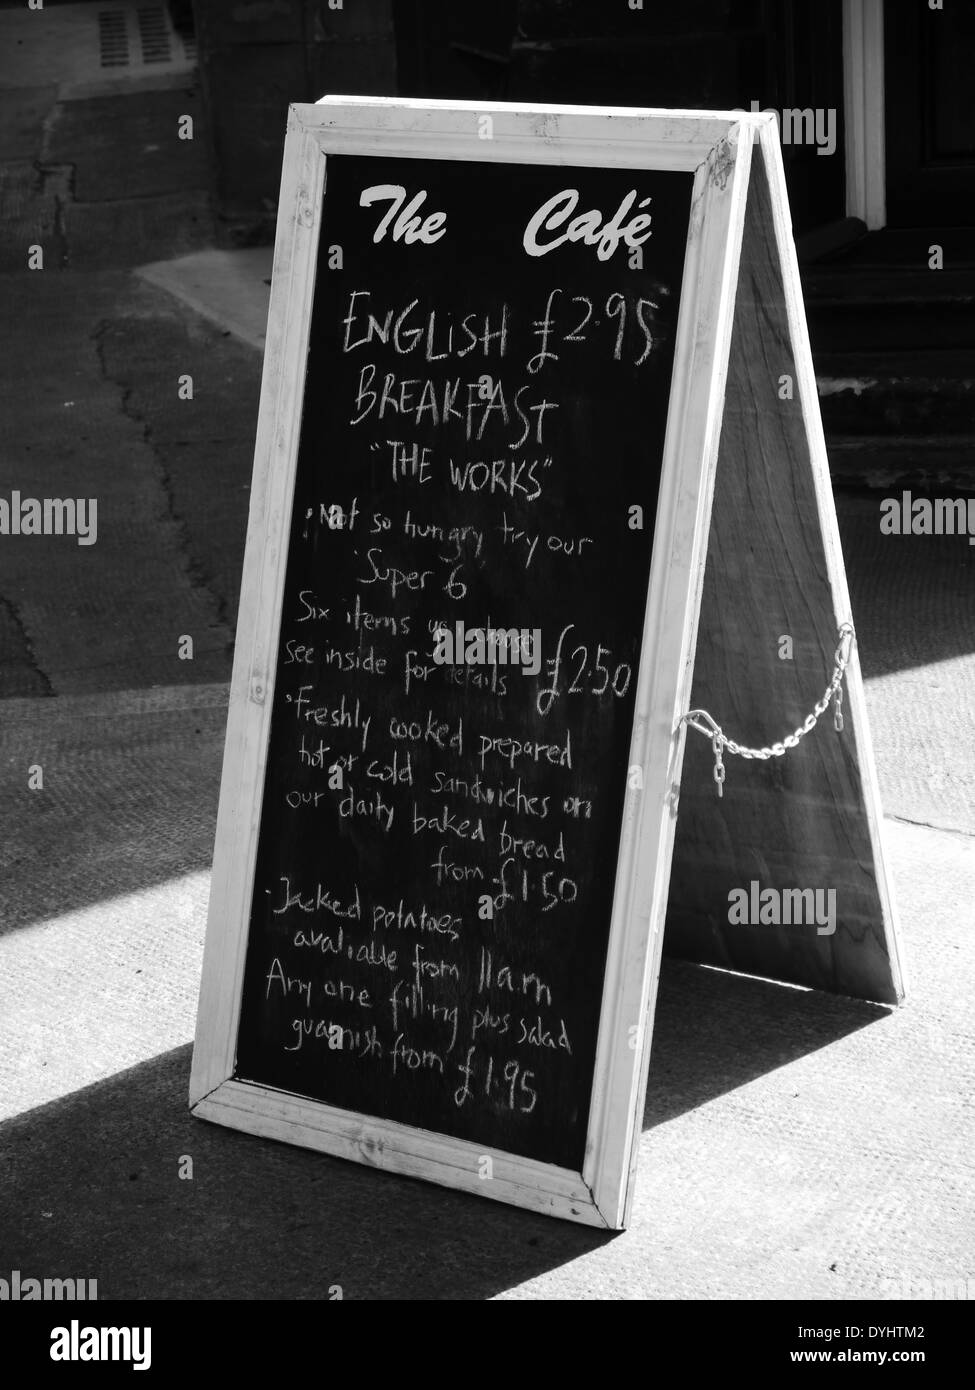 Chalk board / Sandwich déjeuner menu Se connecter à l'extérieur du Café, rue Queen, Quayside, Newcastle upon Tyne, au Royaume-Uni. Monochrome Banque D'Images